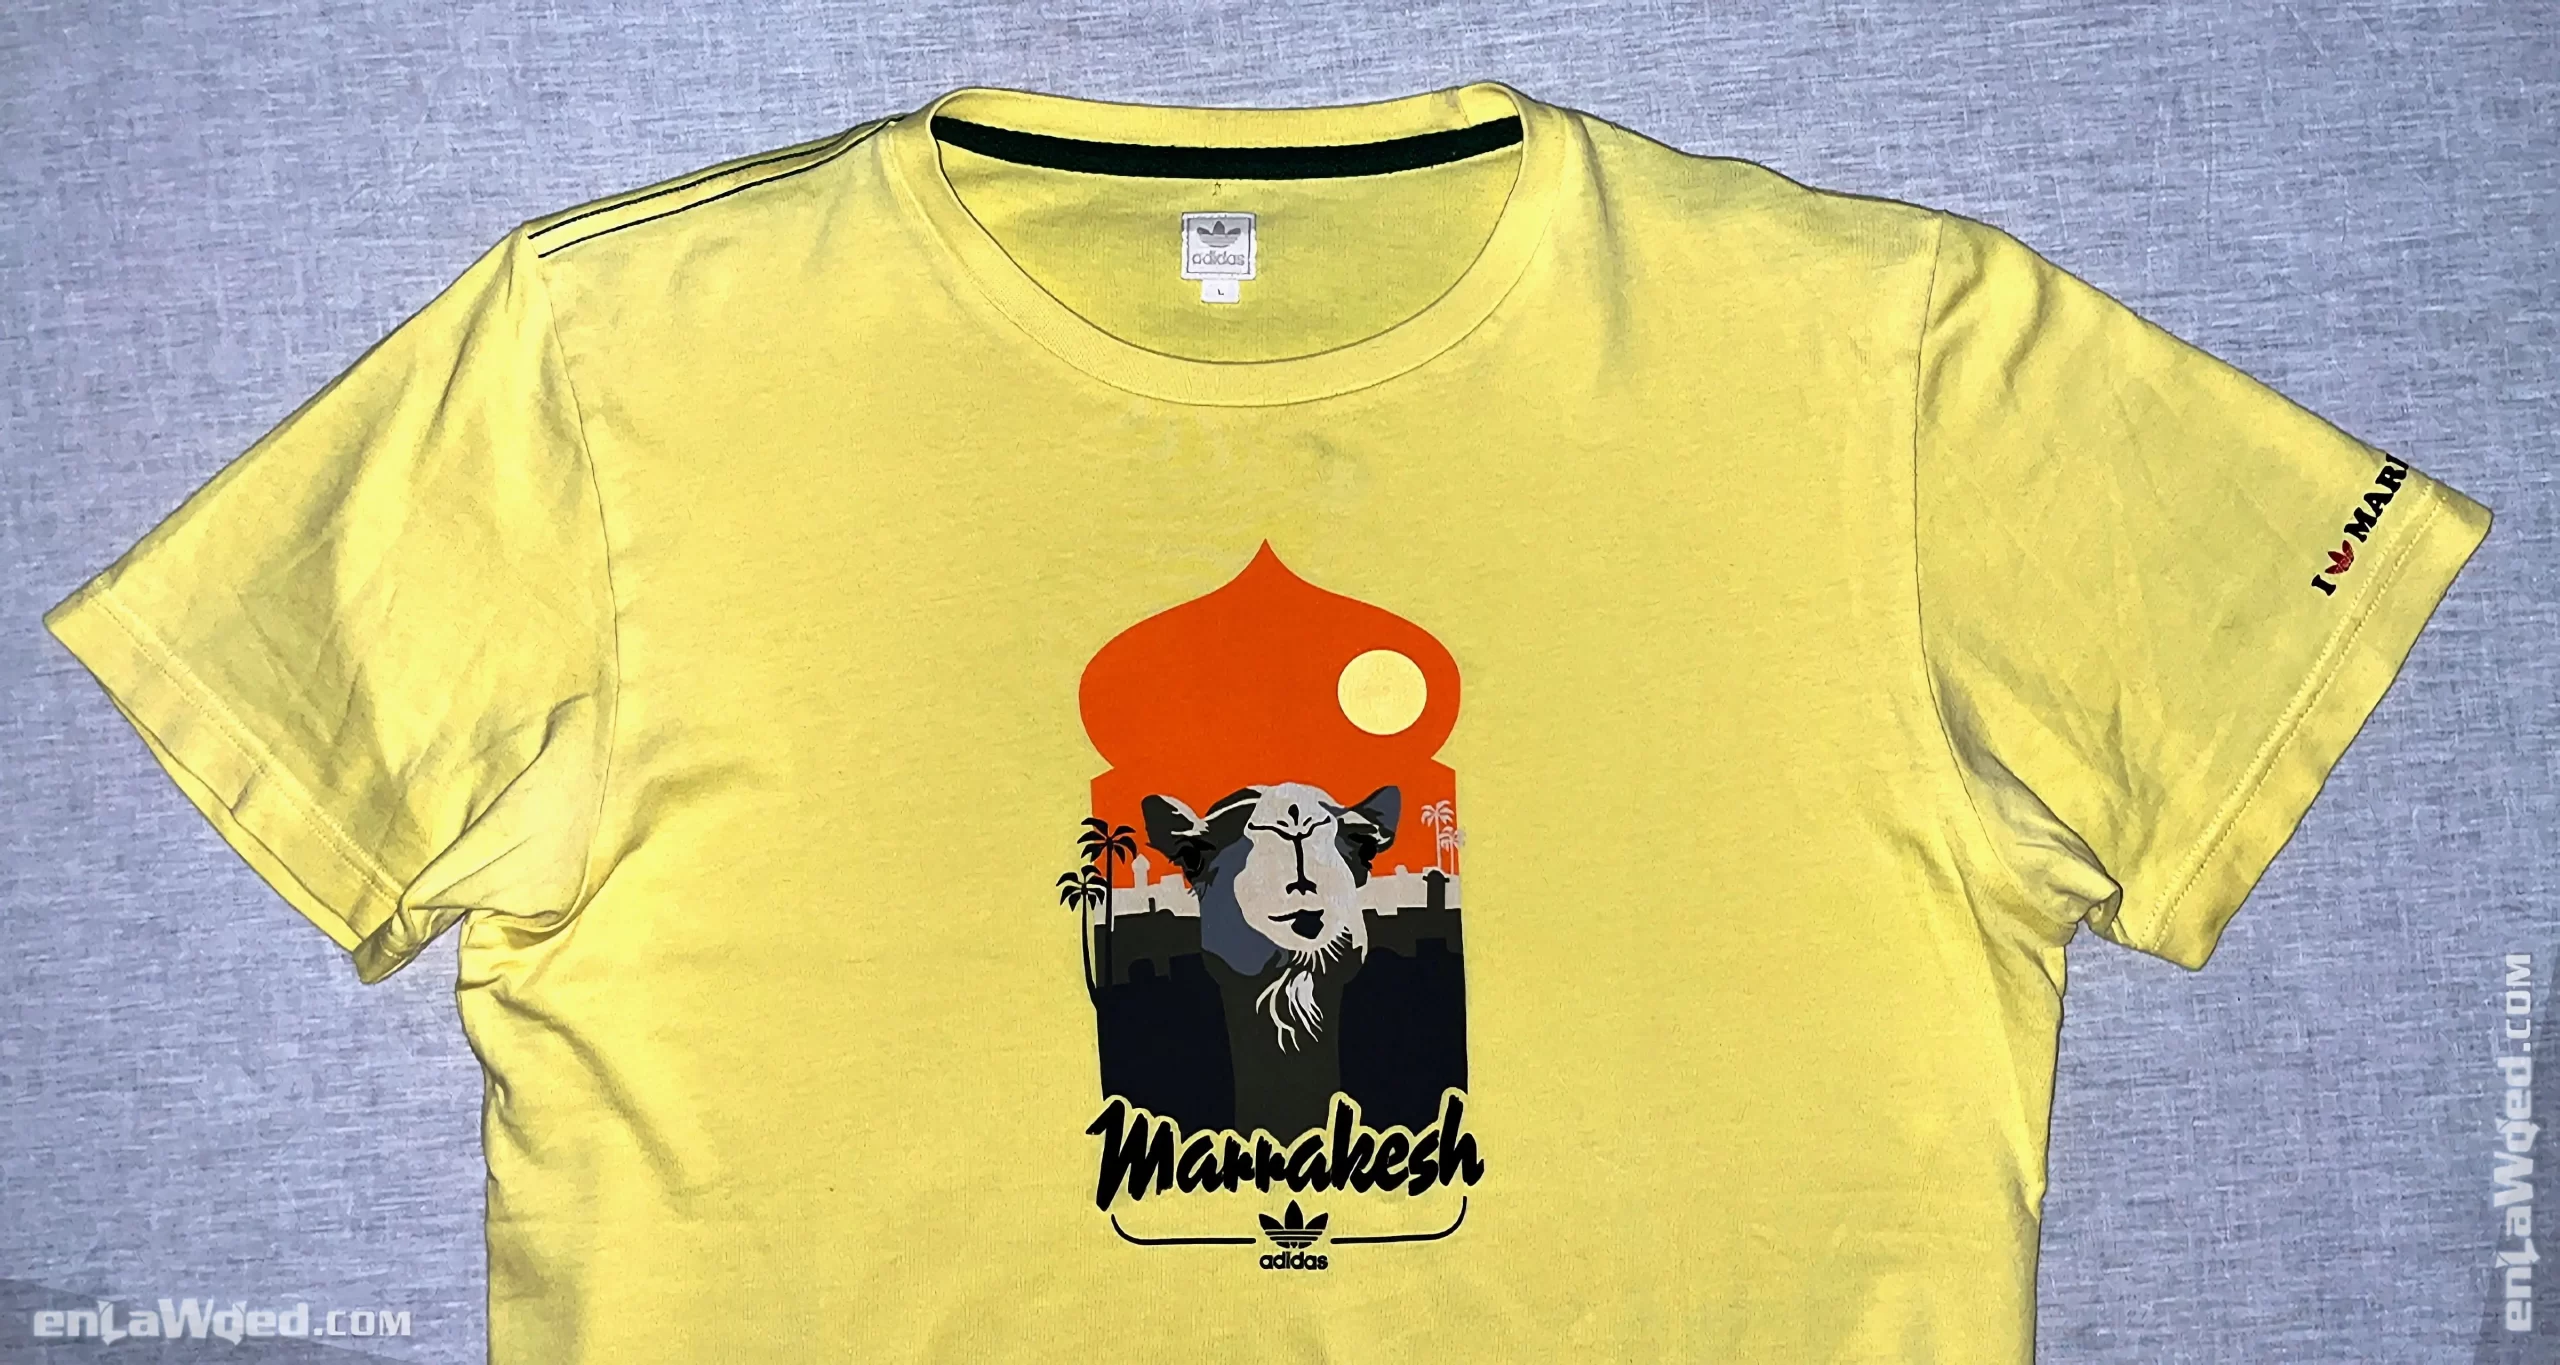 Men’s 2007 Marrakech T-Shirt by Adidas Originals: Light (EnLawded.com file #lmc5ng76lfpt0fjzuqg)